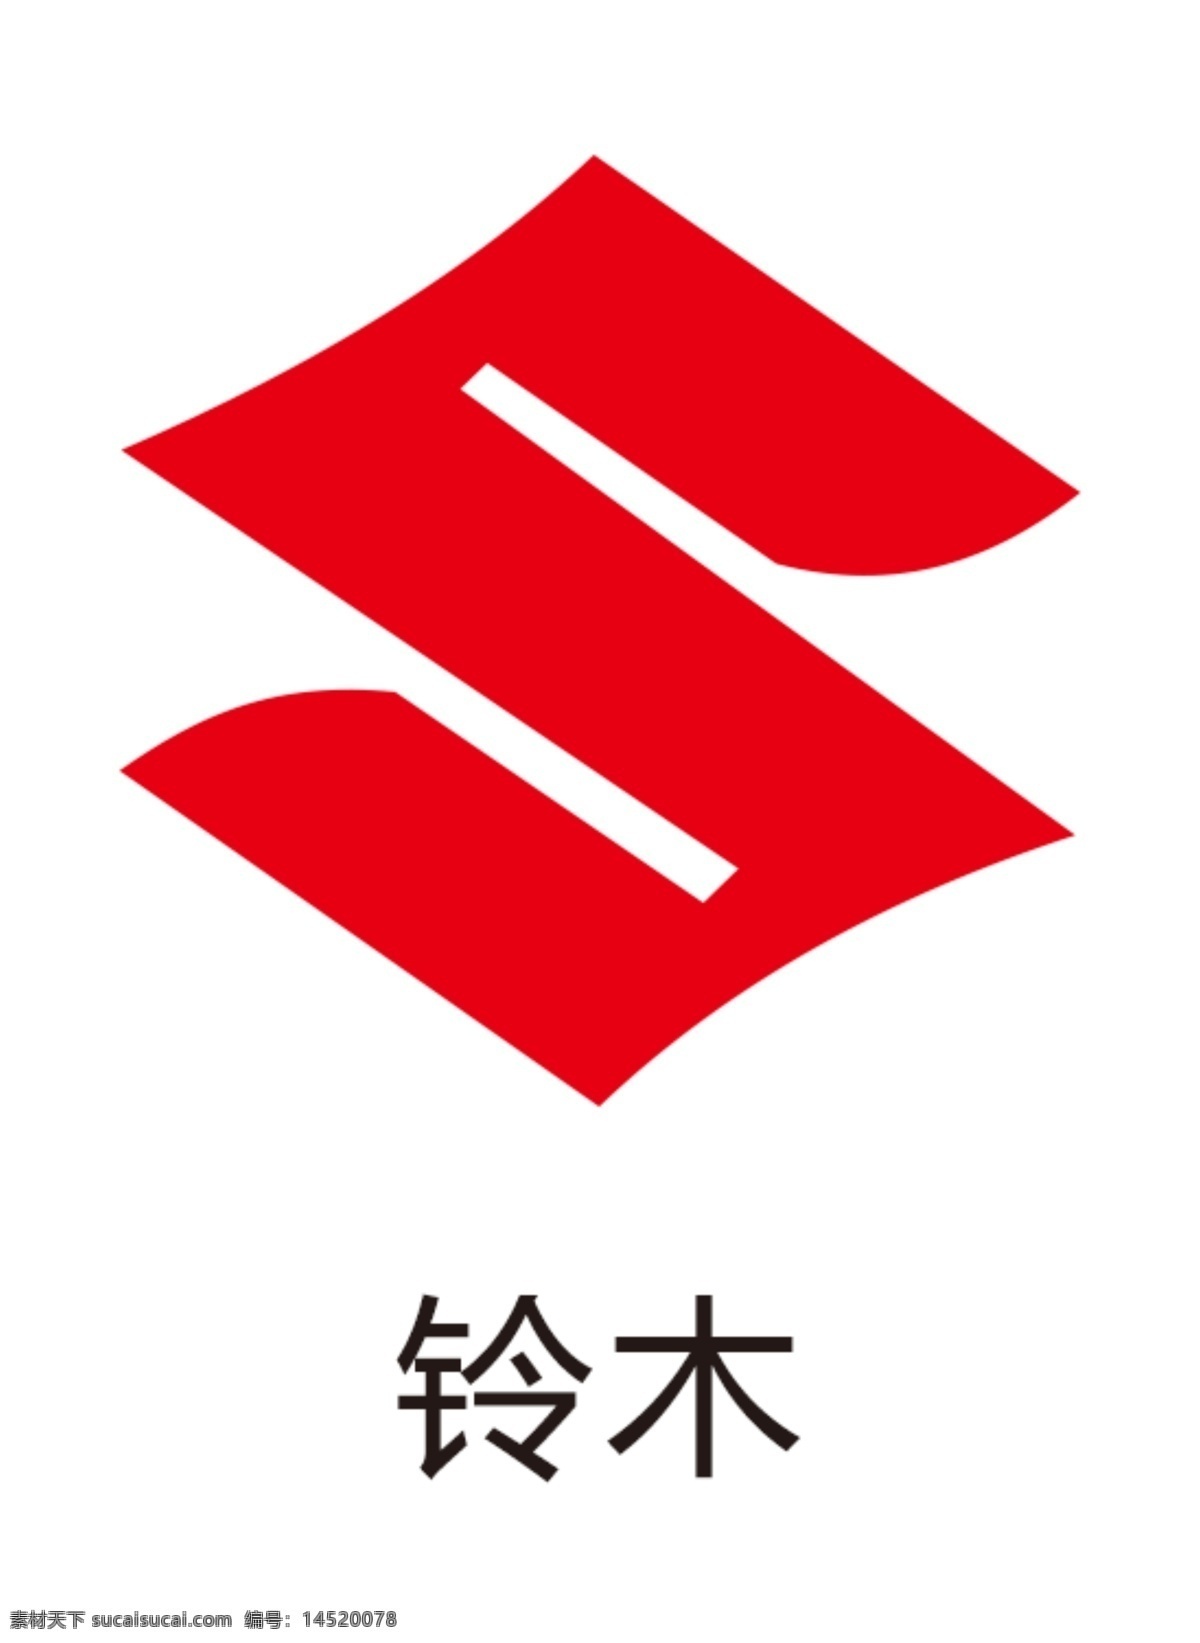 铃木图片 铃木logo 铃木图标 车标 汽车标志 汽车logo 汽车 图标